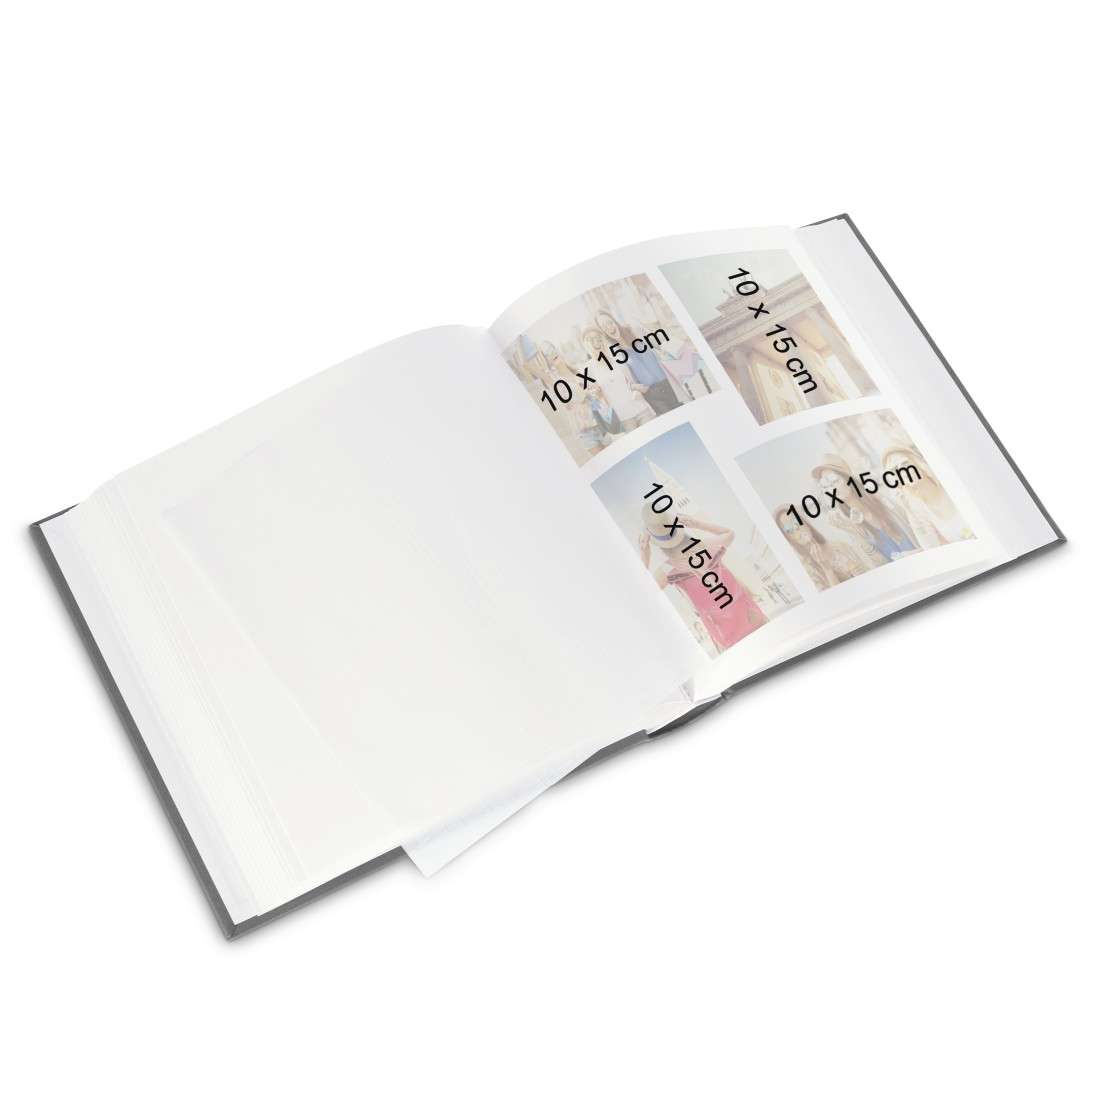 Jumbo-Album Singo, 30x30 cm, 100 weiße Seiten, Pink